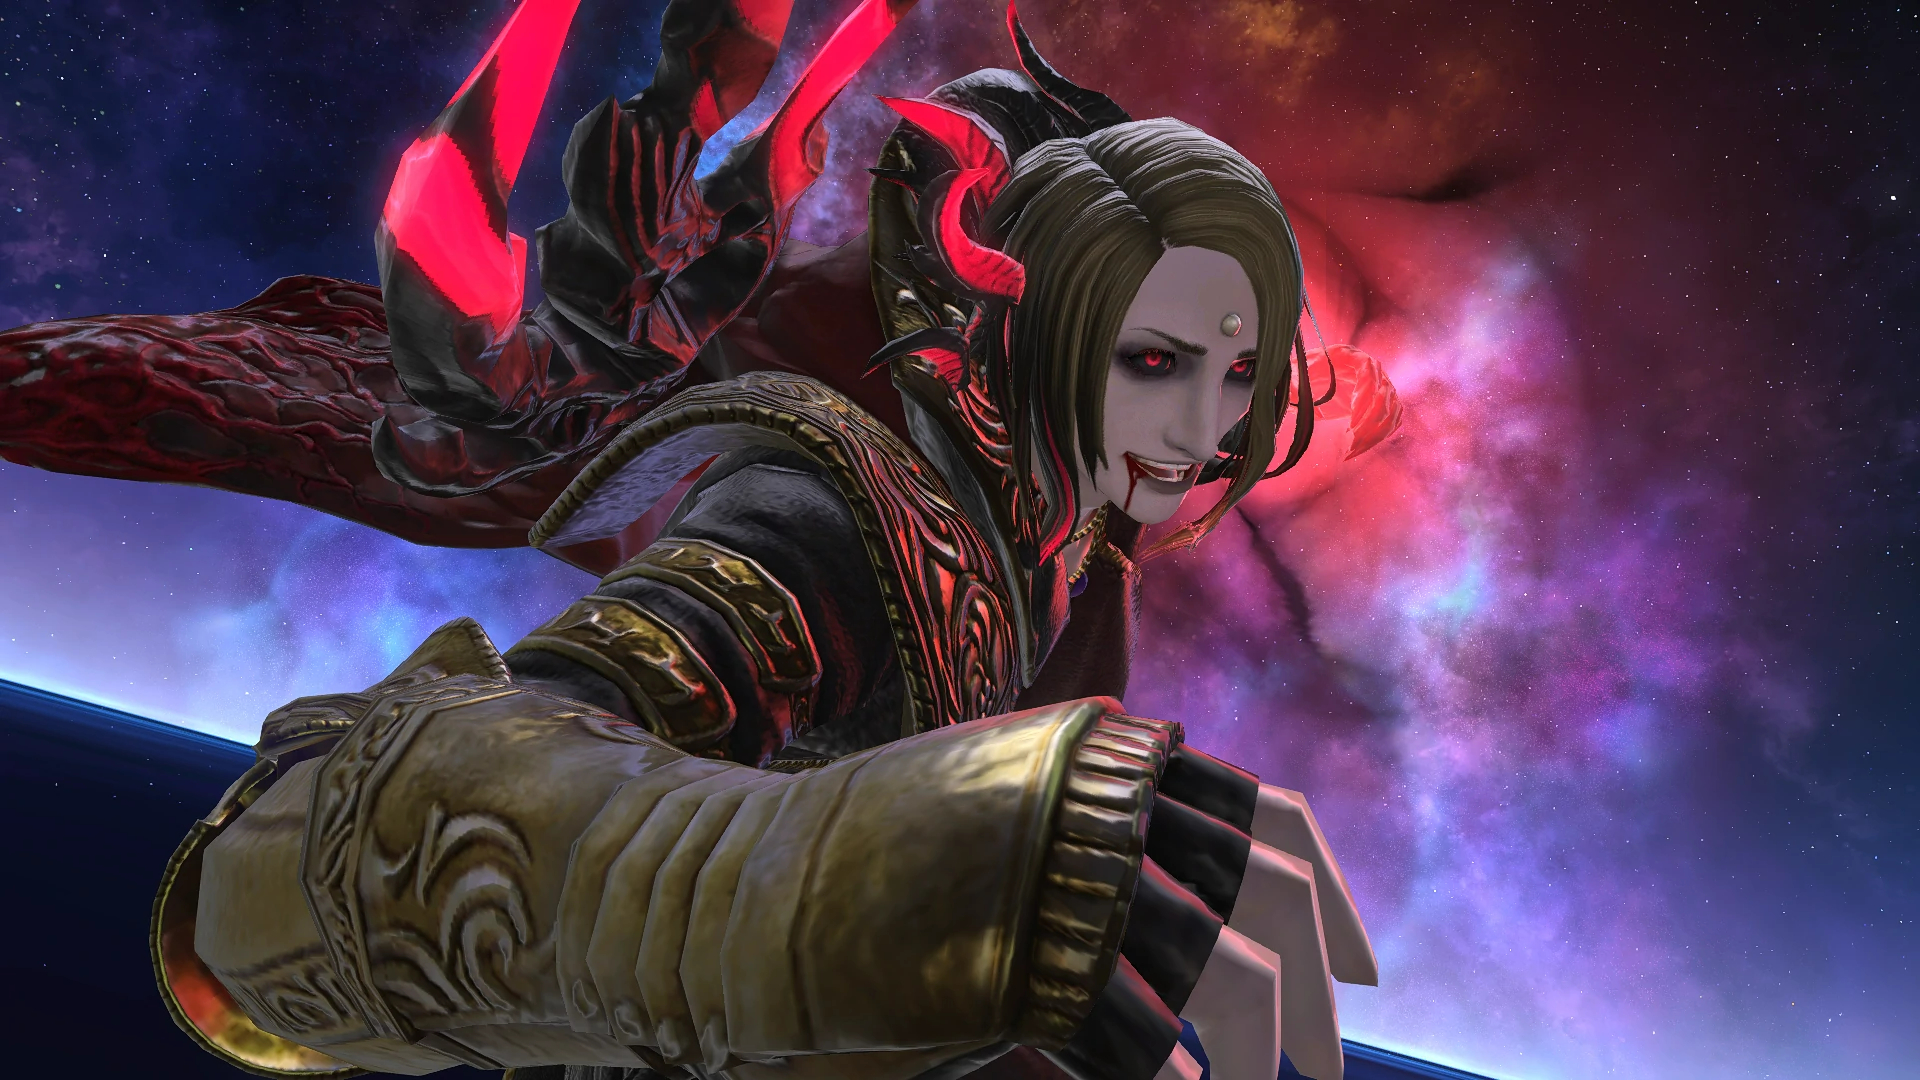 Le mod Gshade de Final Fantasy XIV contient des logiciels malveillants, admet le développeur